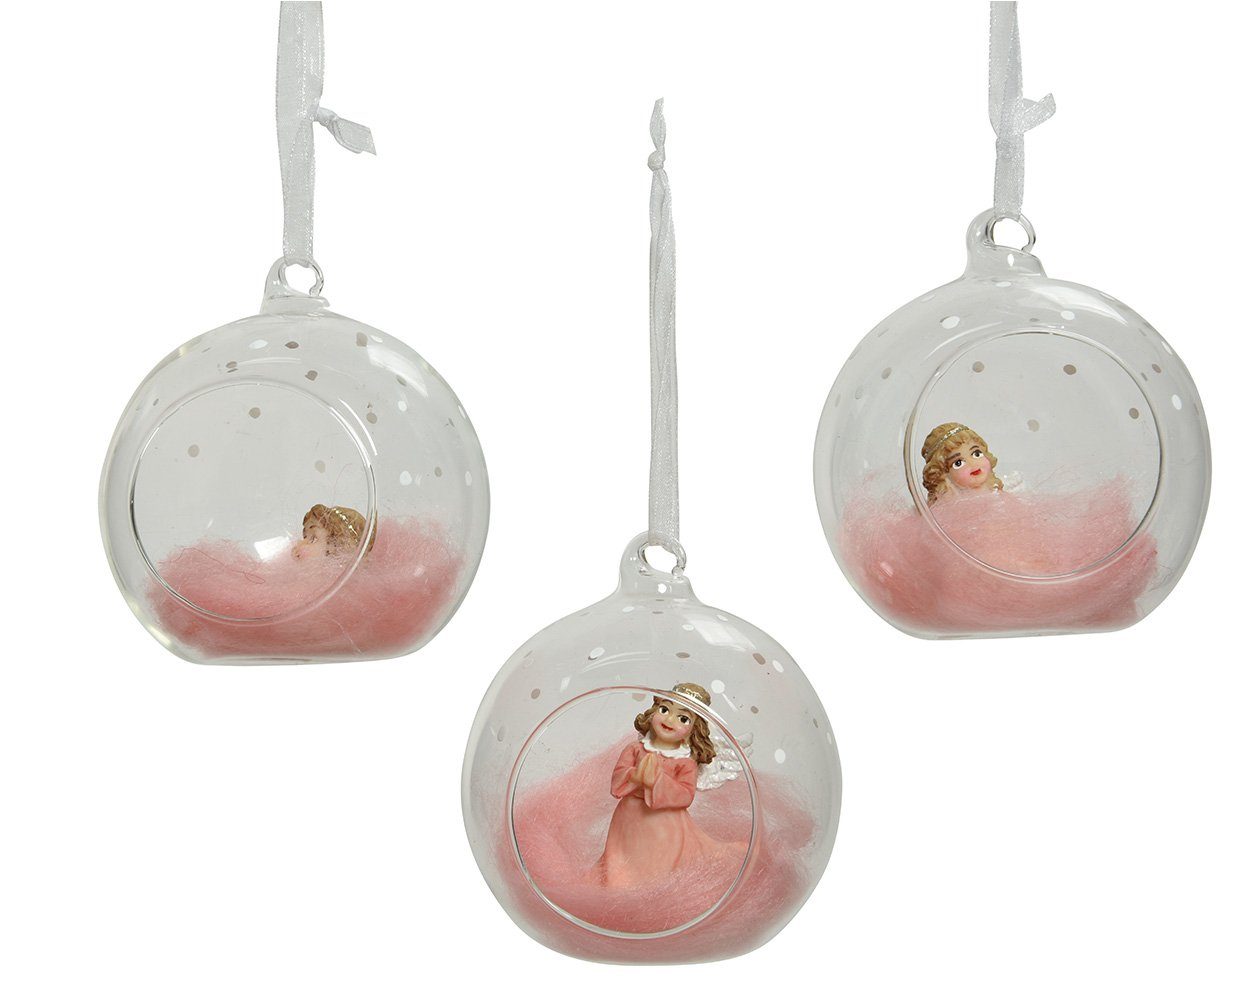 Decoris season decorations Weihnachtsbaumkugel, Weihnachtskugeln Glas mit Engel 8cm klar / rosa, 1 Stück sortiert